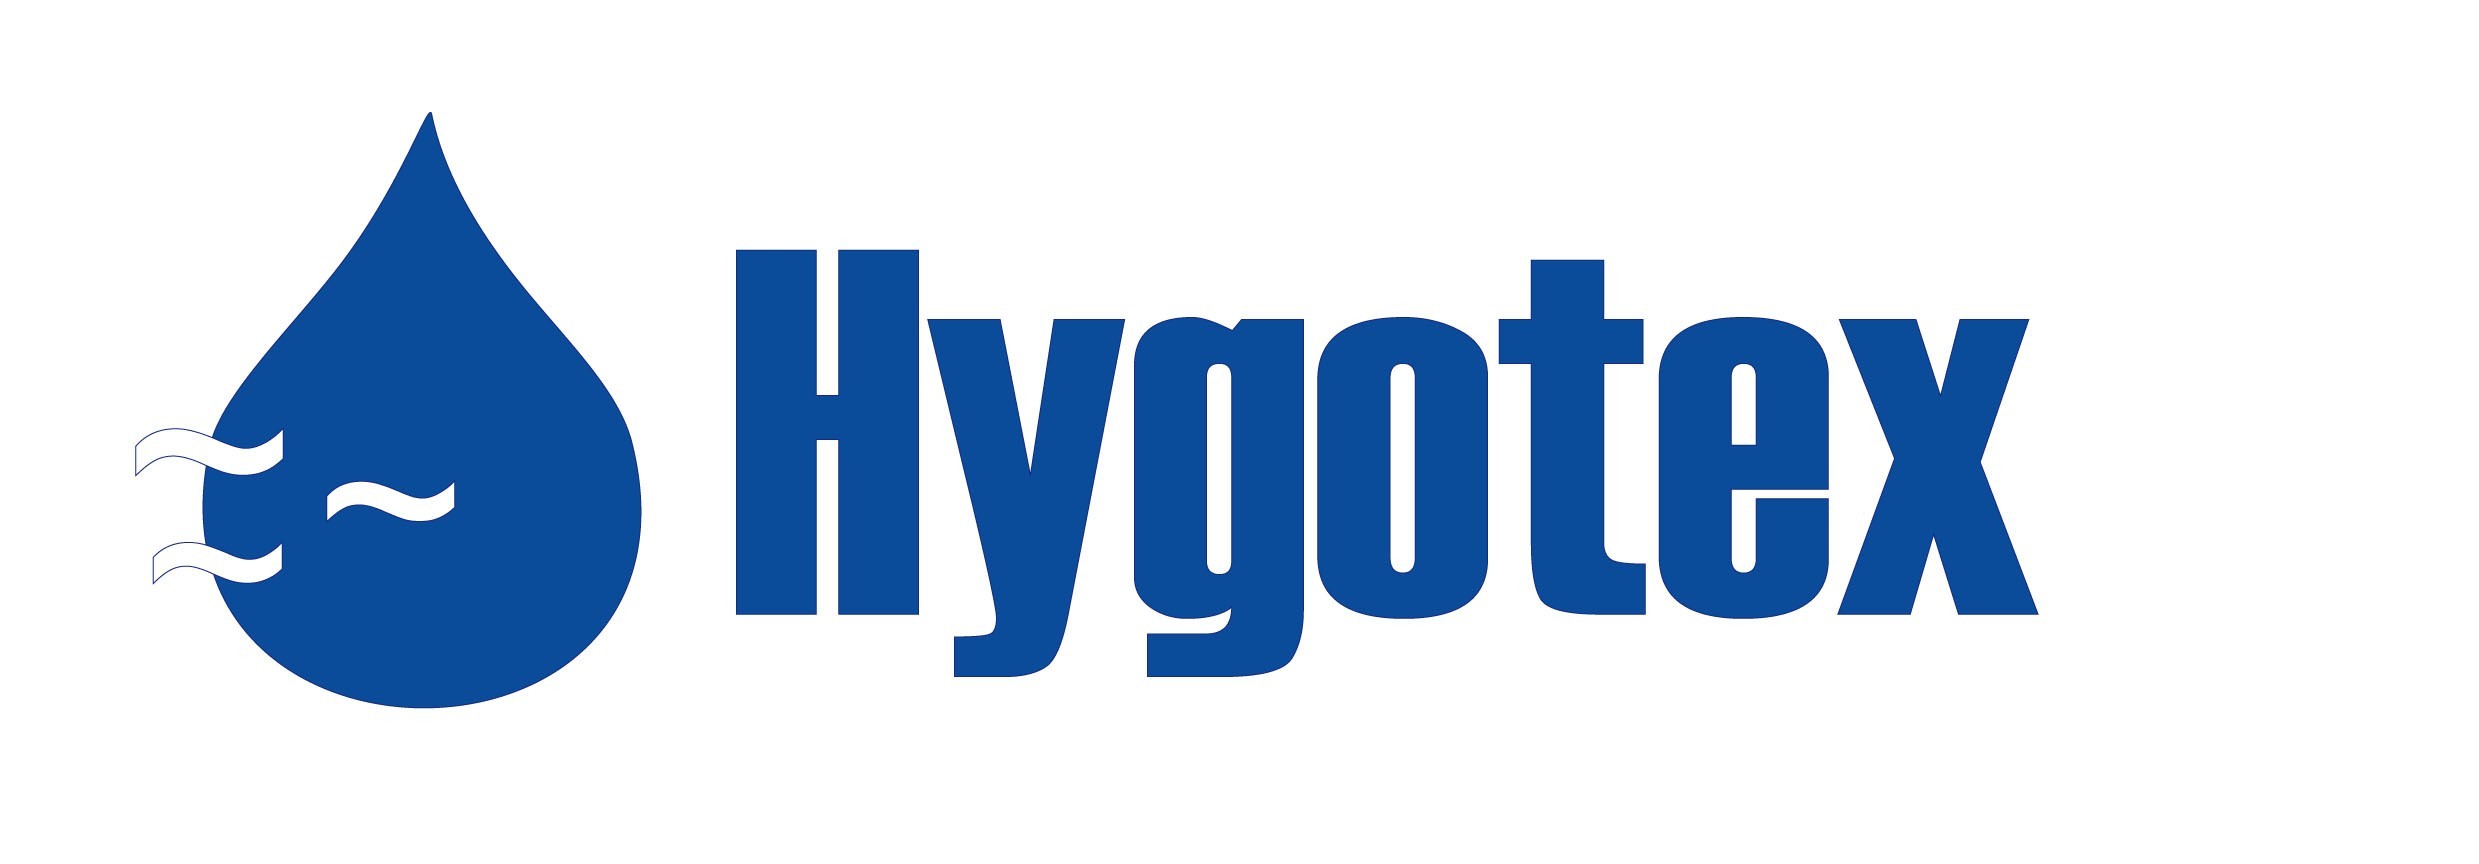 HYGOTEX